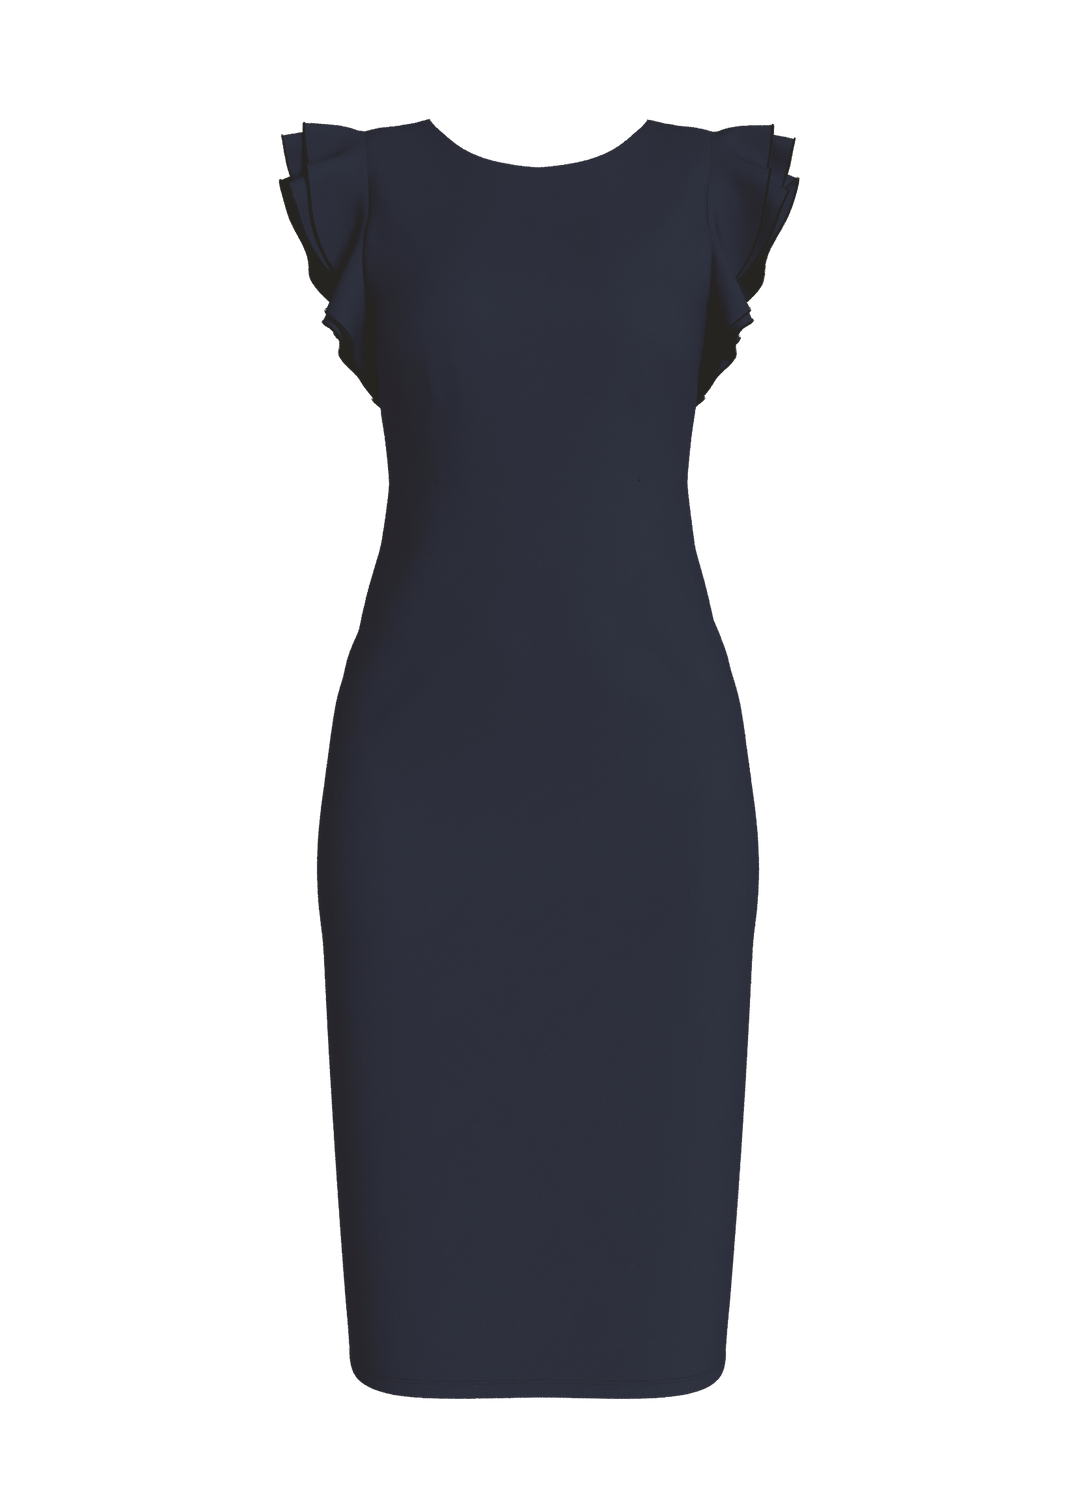 VIWALLIE Dress - Navy Blazer